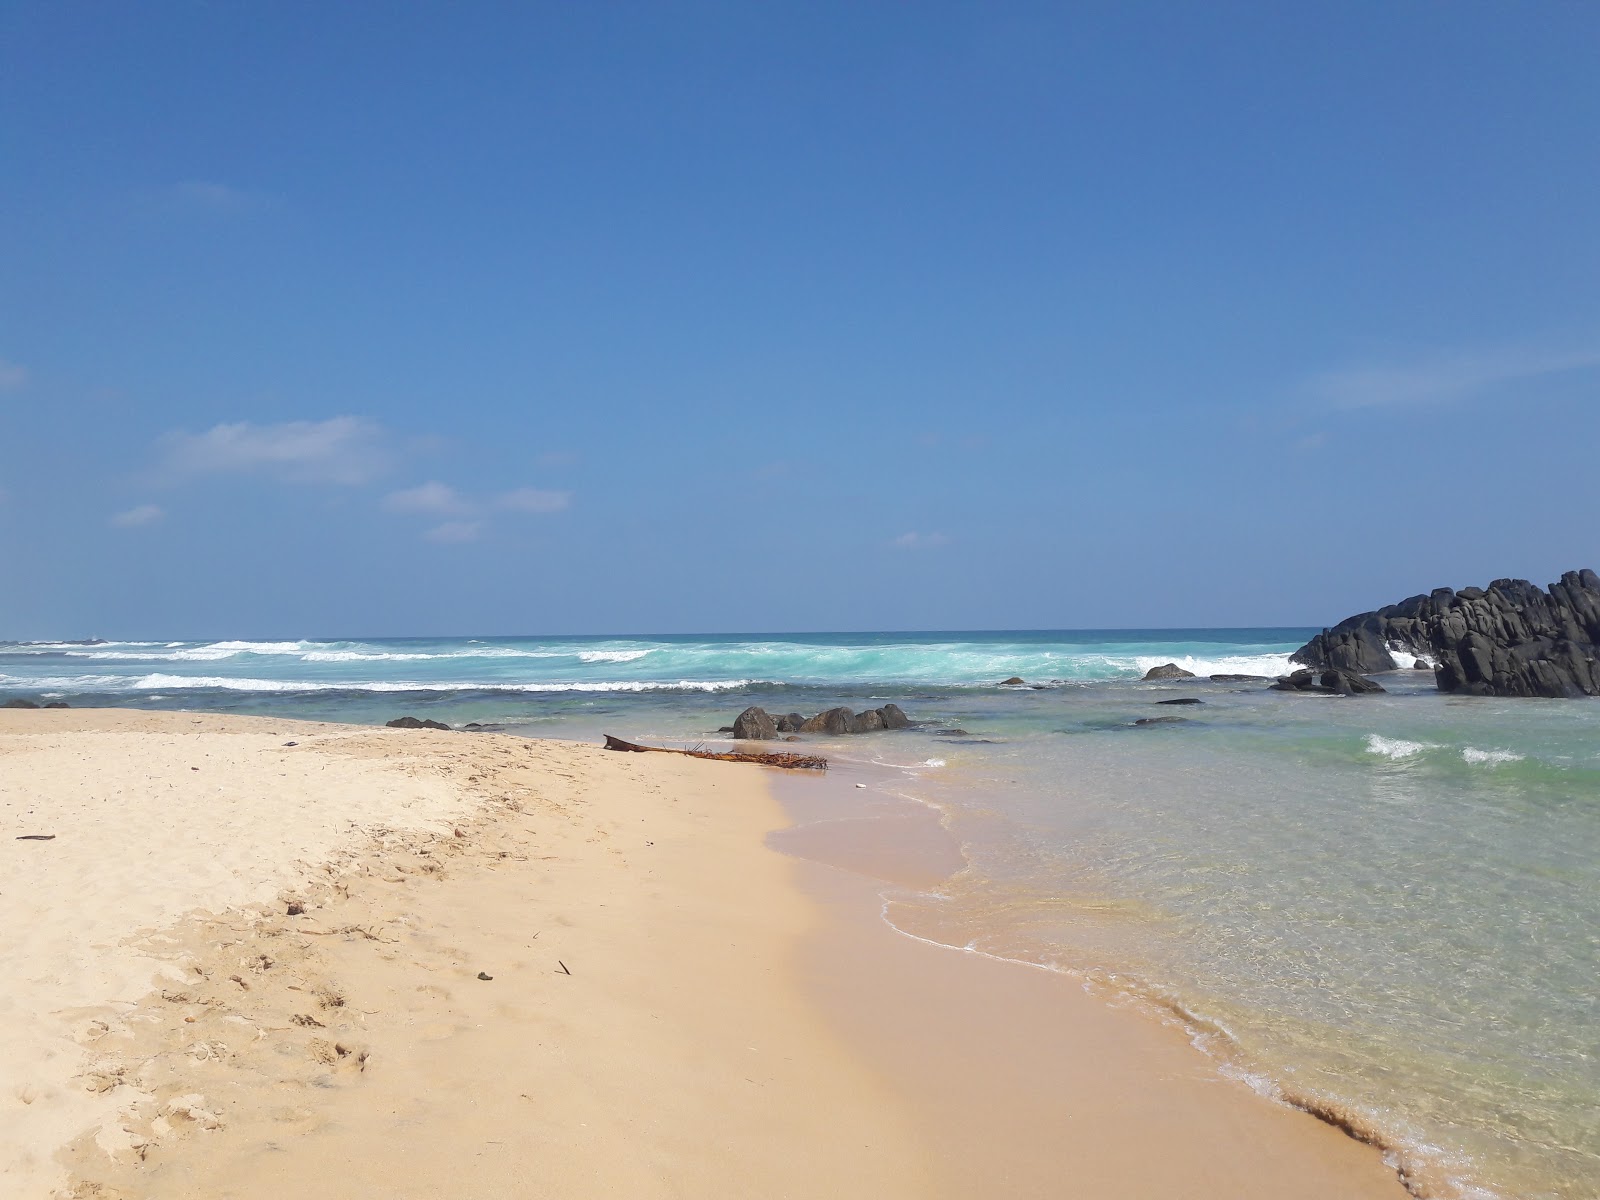 Fotografie cu Dalawella Beach - locul popular printre cunoscătorii de relaxare